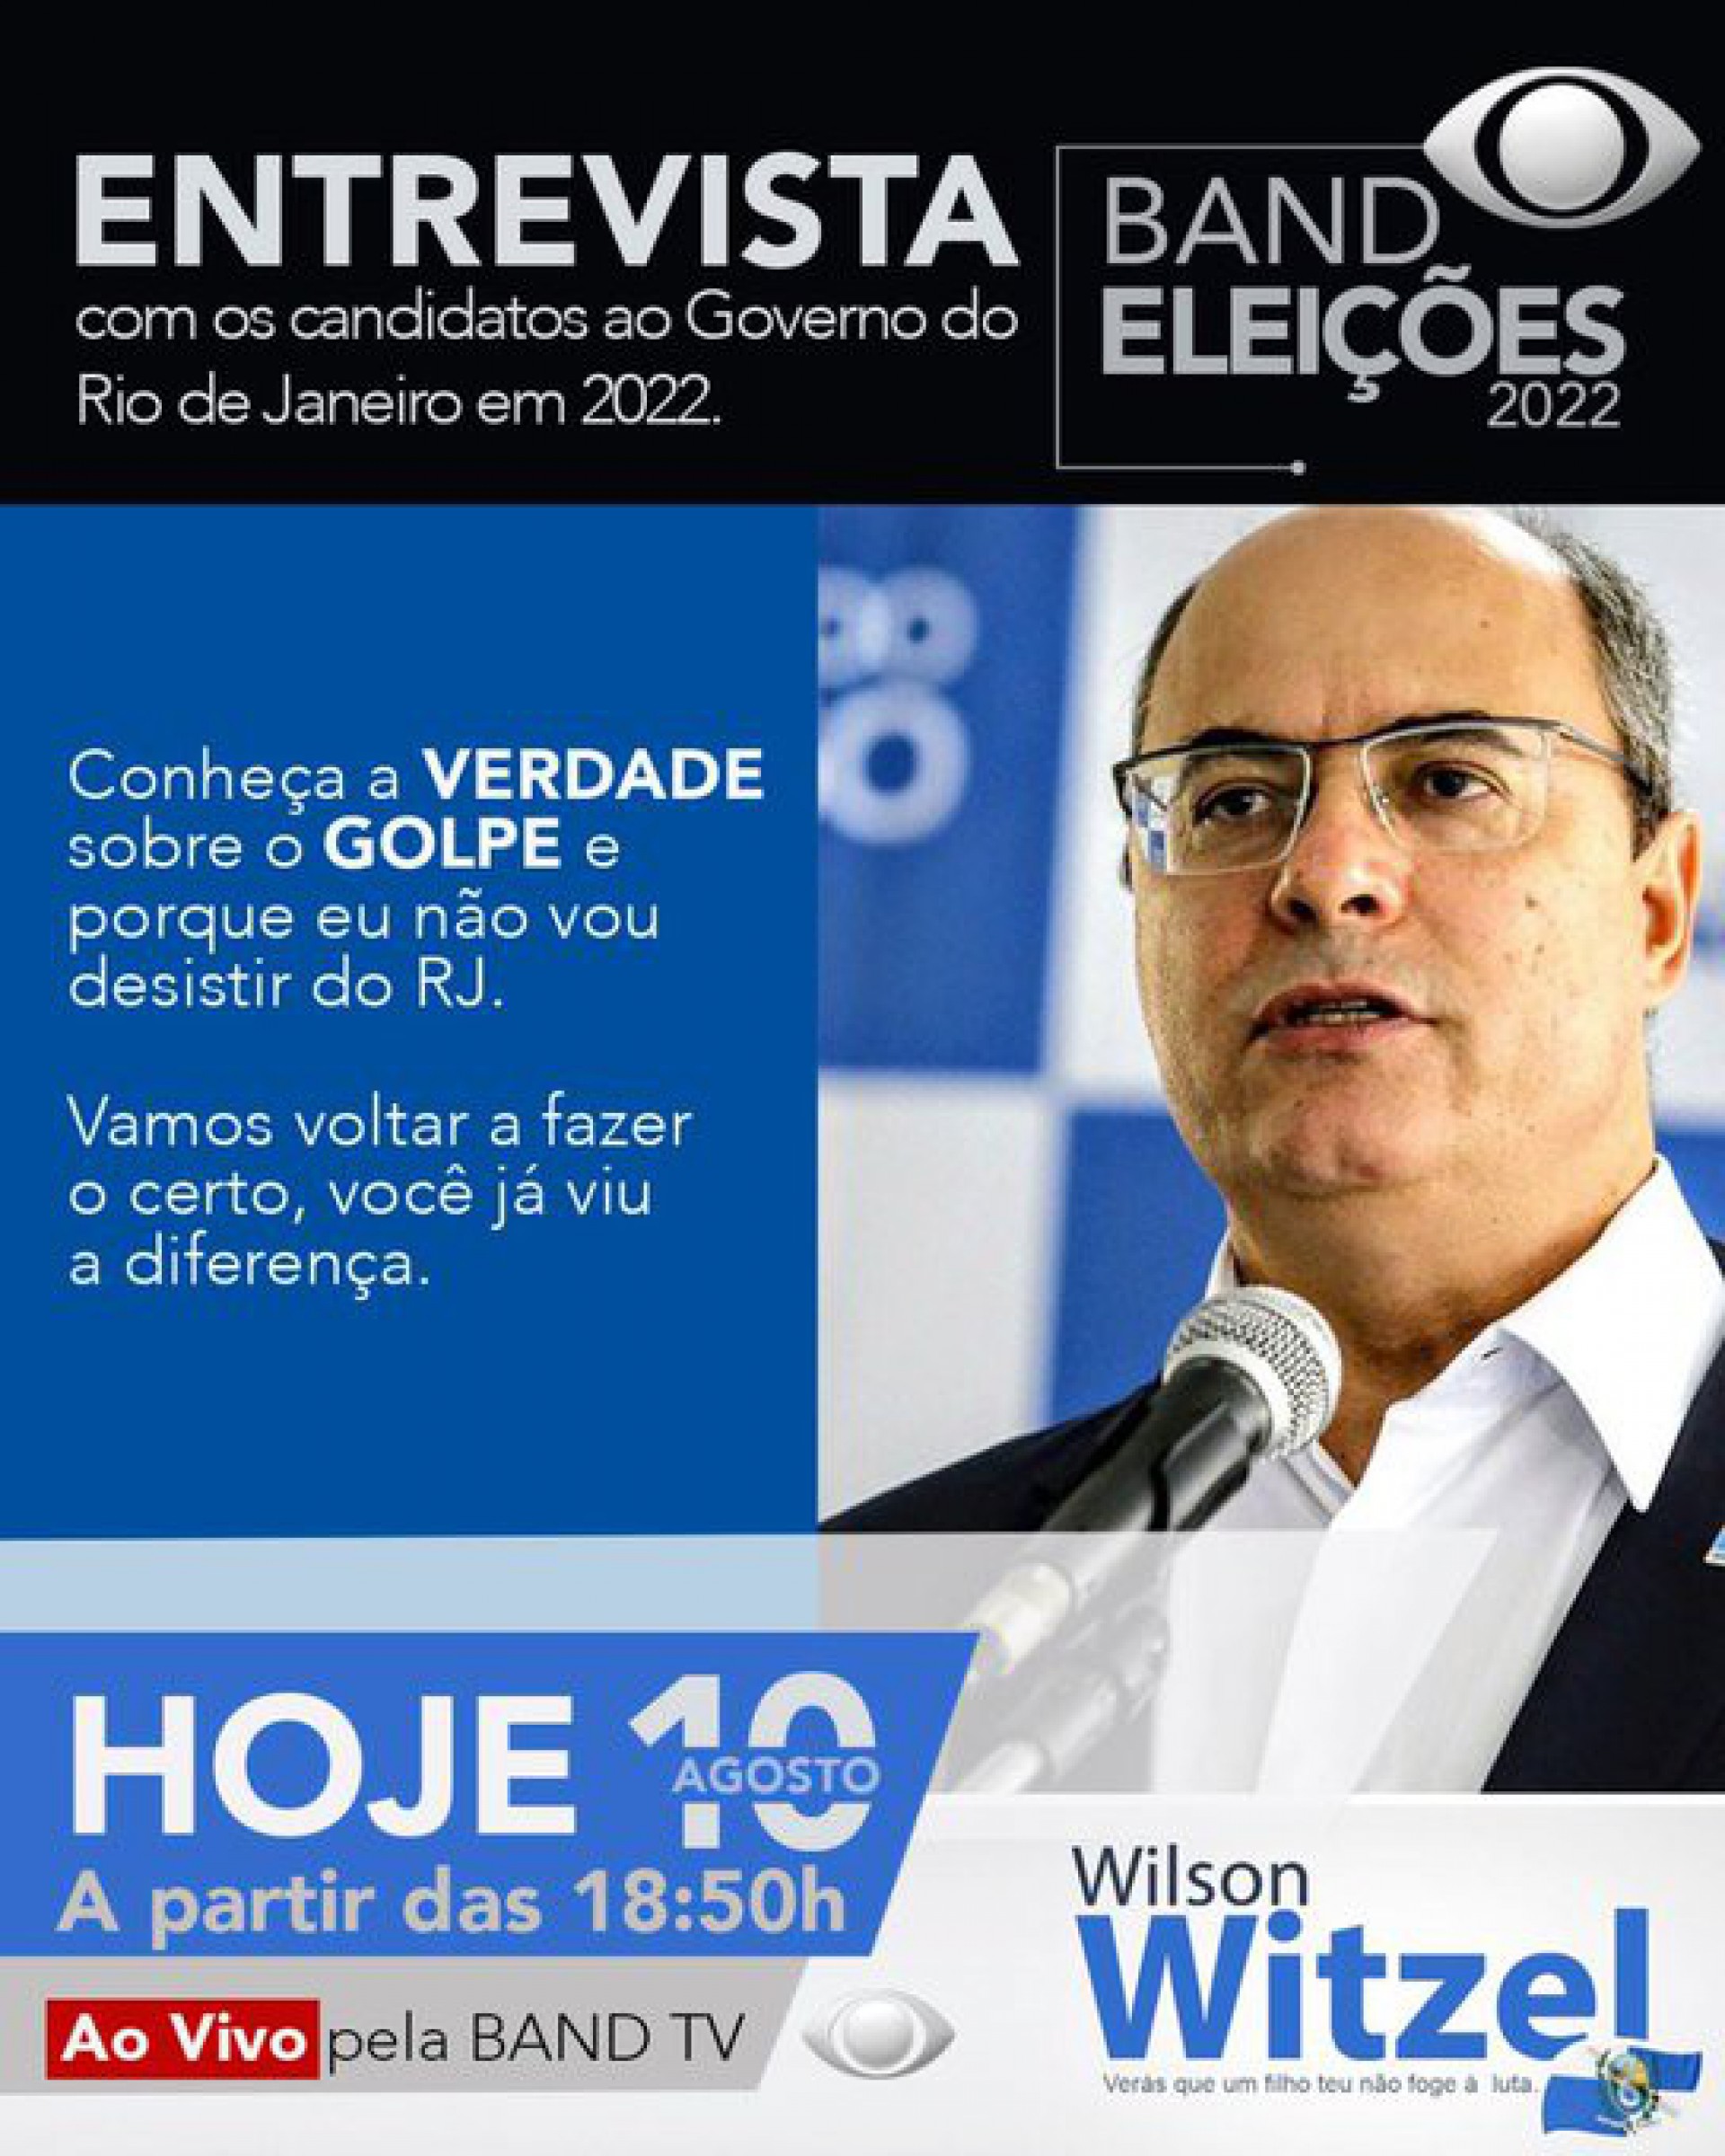 Candidato ao governo do Rio, Wilson Witzel faz publicação em suas redes sociais sobre a entrevista que dará à BandTV - Divulgação / Redes Sociais